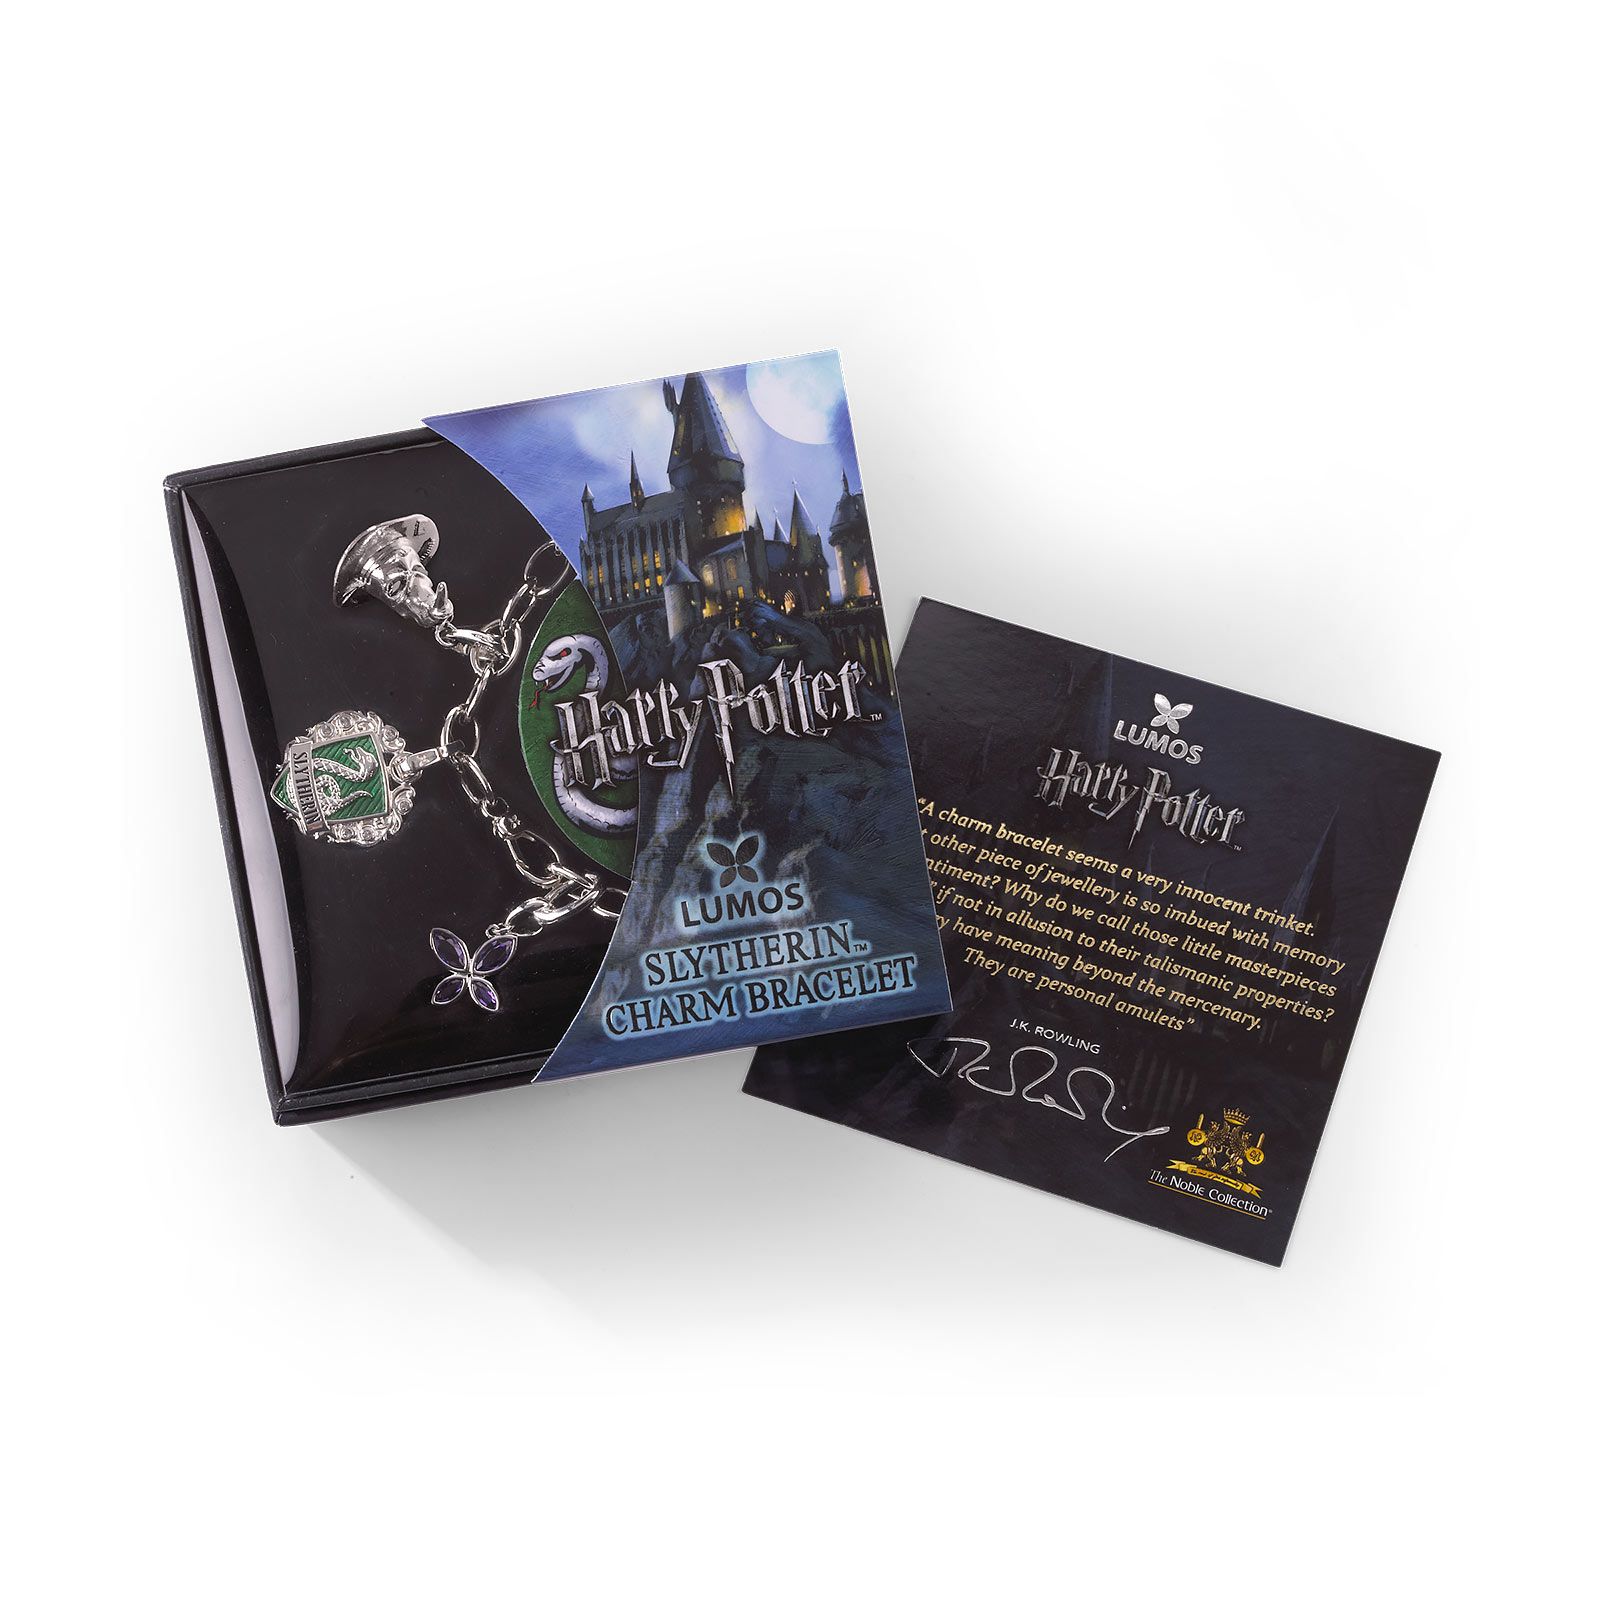 Harry Potter - Lumos Slytherin Charm Bracelet